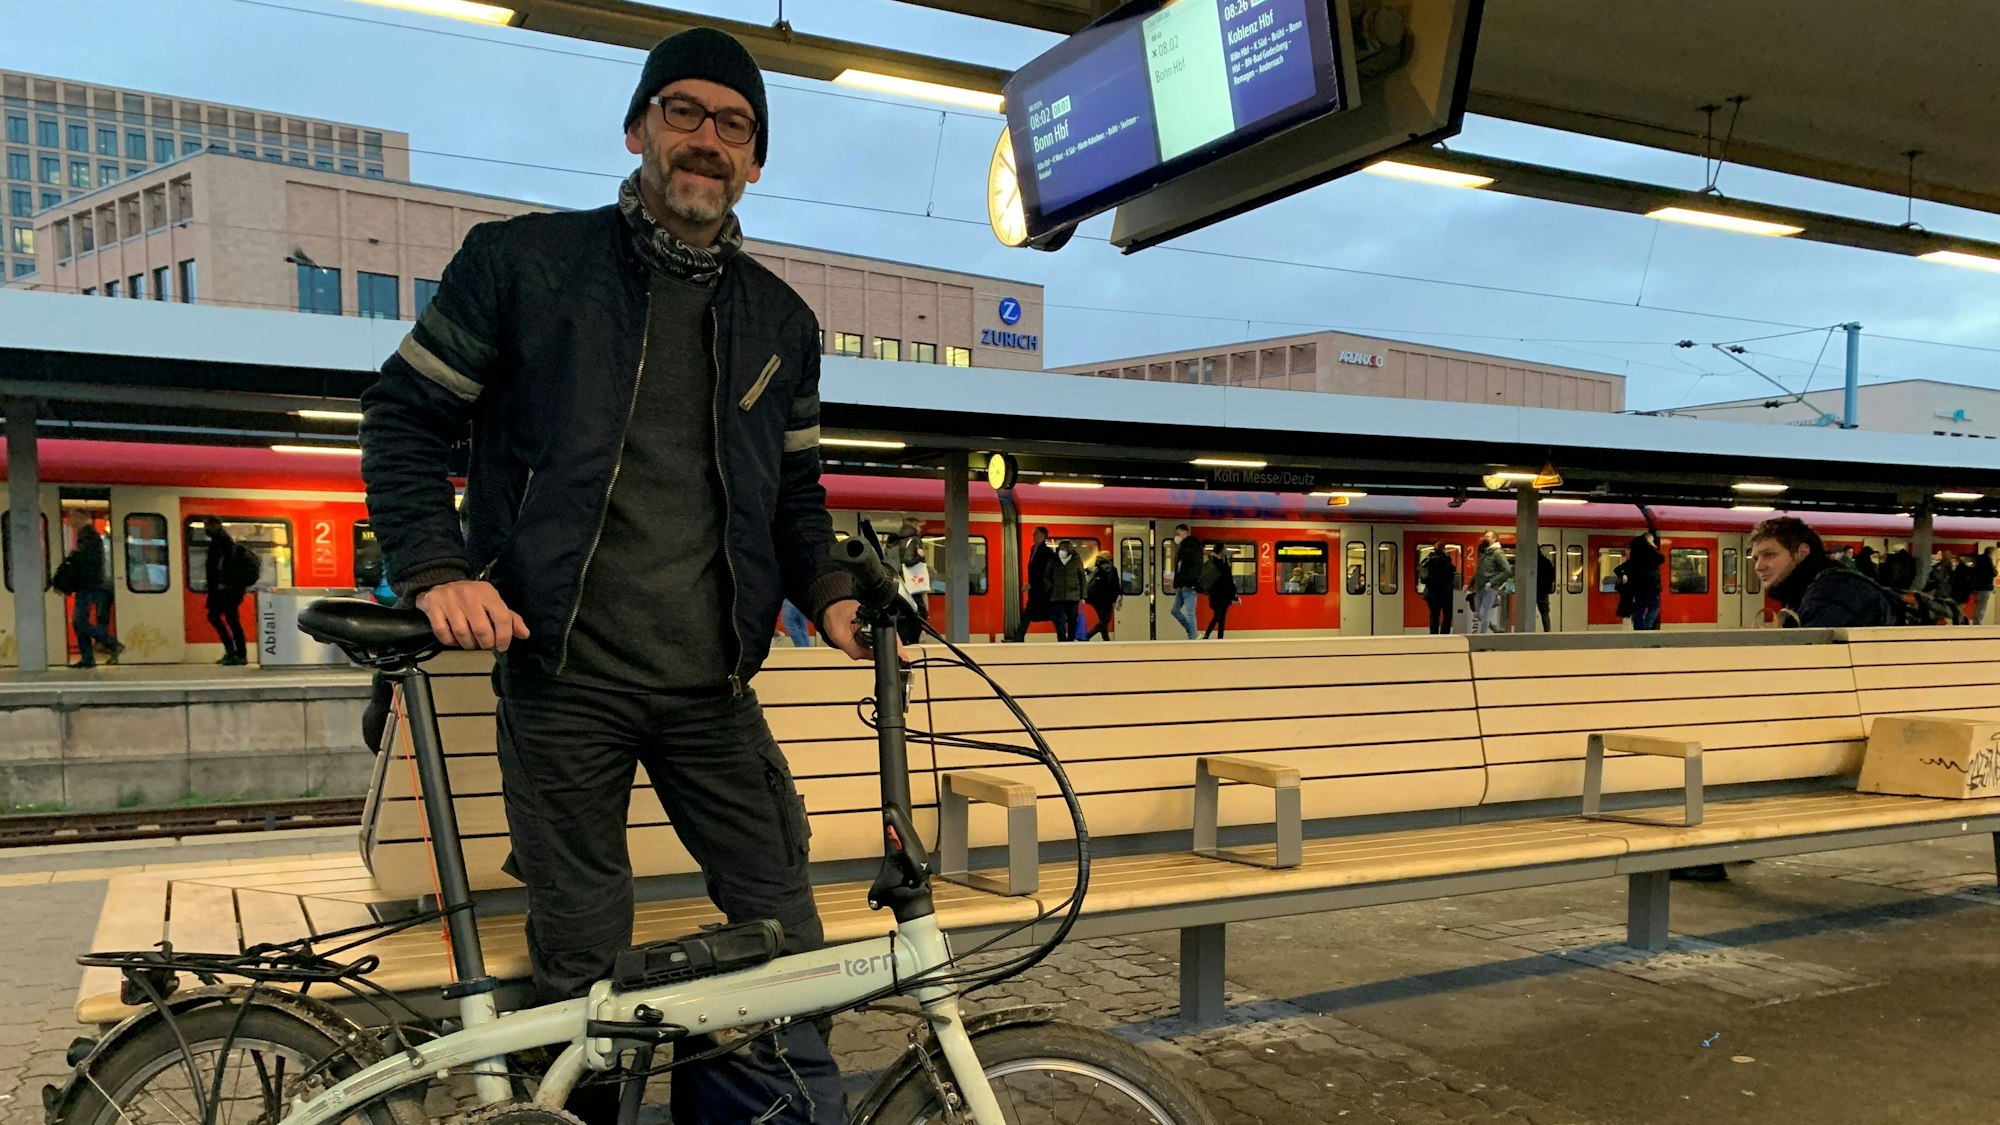 Bahnpendler Michael Weber steht mit seinem Faltrad am Bahnhof Köln-Messe/Deutz und wartet auf seinen Zug Richtung Pulheim. Im Hintergrund ist eine S-Bahn auf dem Gleis zu sehen.